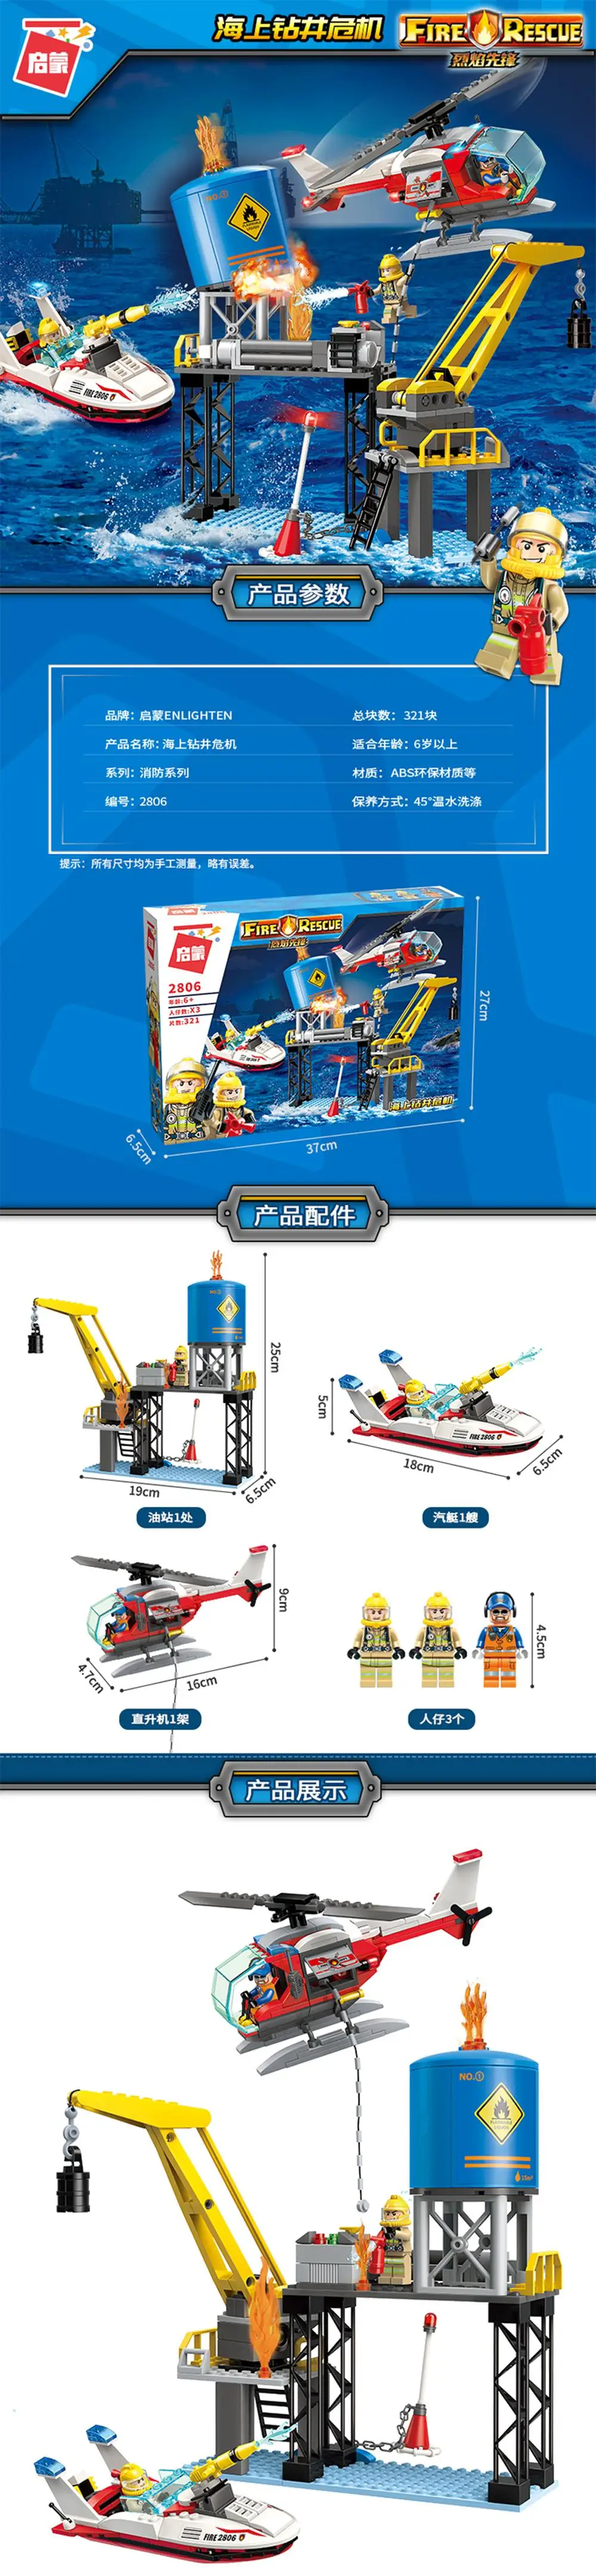 Пожарная спасательная станция лестница грузовой вертолет лодка Строительство совместимые детские конструкторы Детские комплекты DIY игрушки подарок для детей